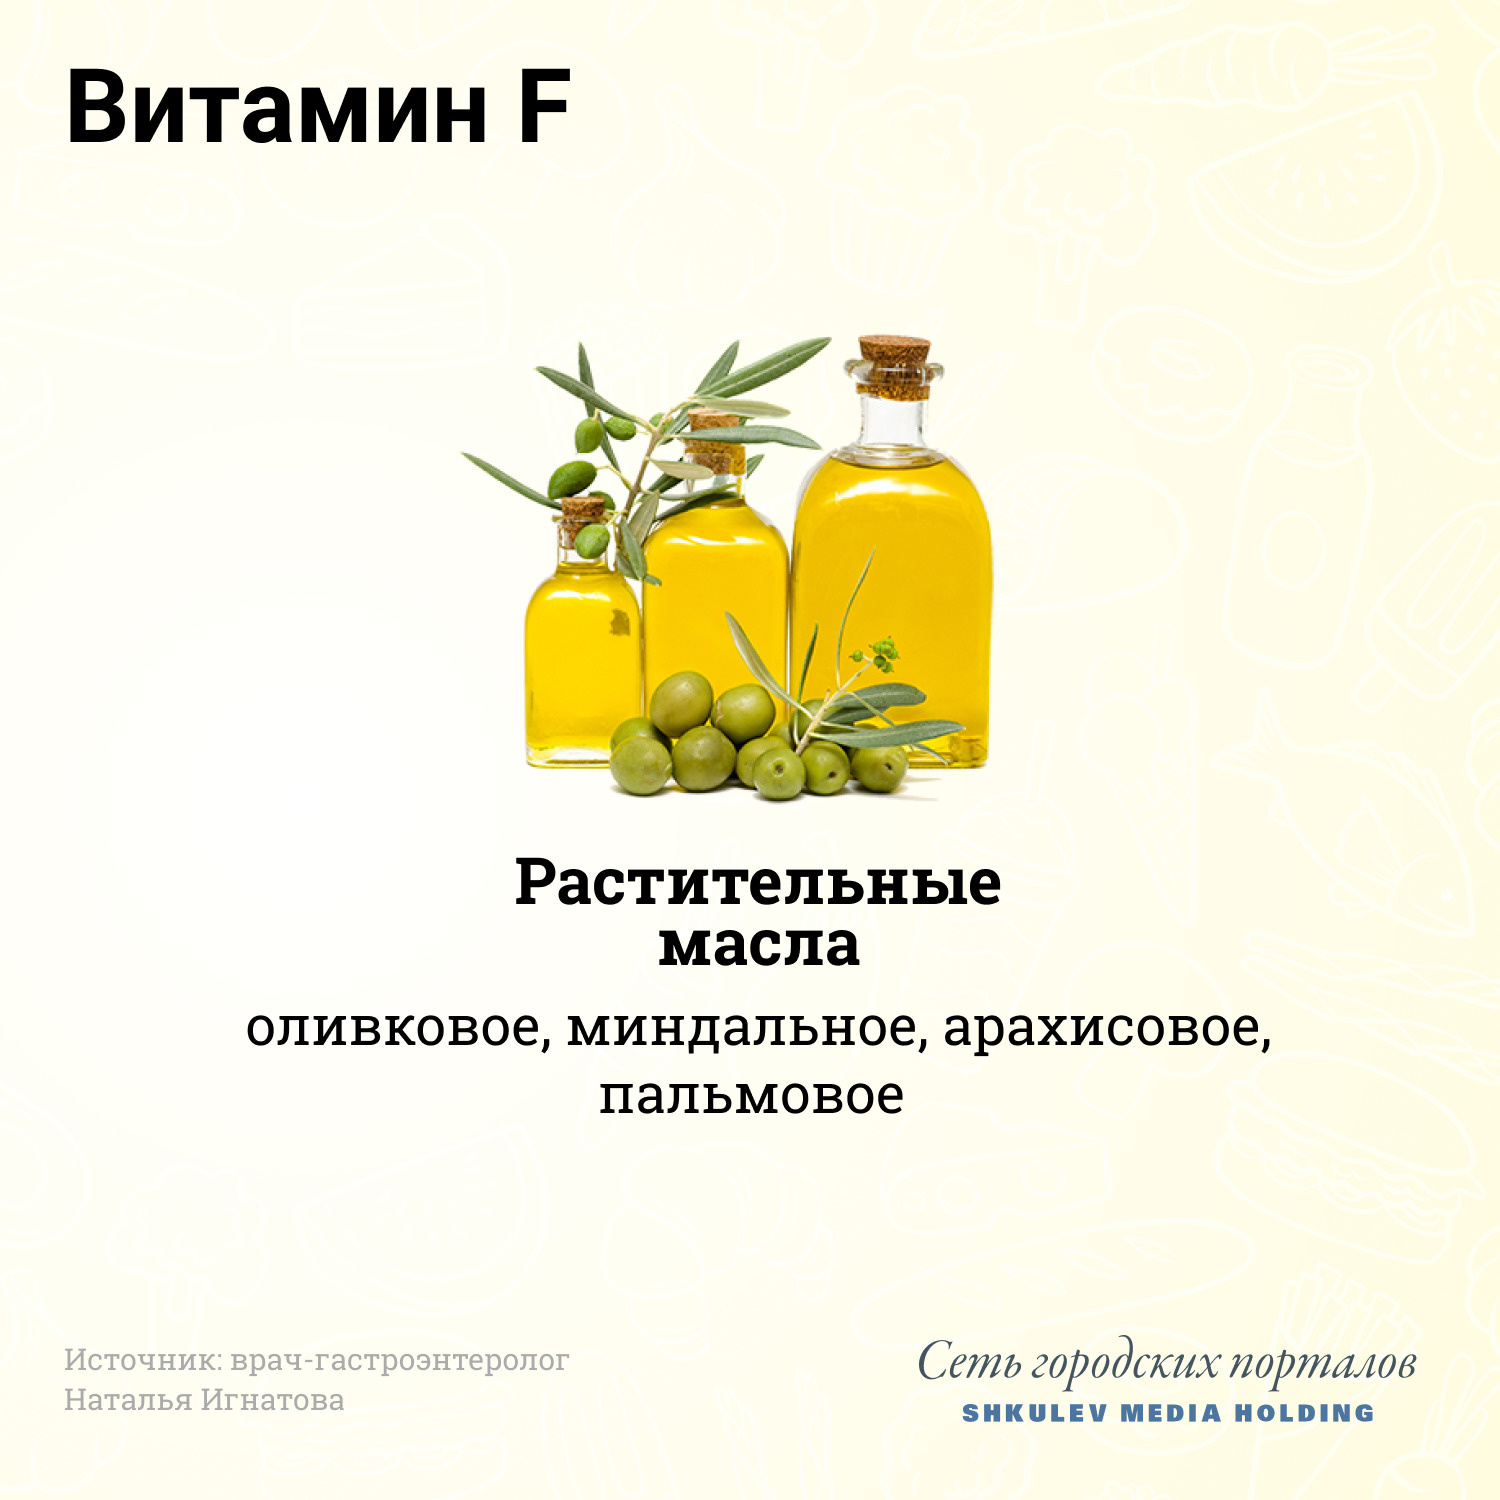 Больше всего витамина F содержится в растительных маслах